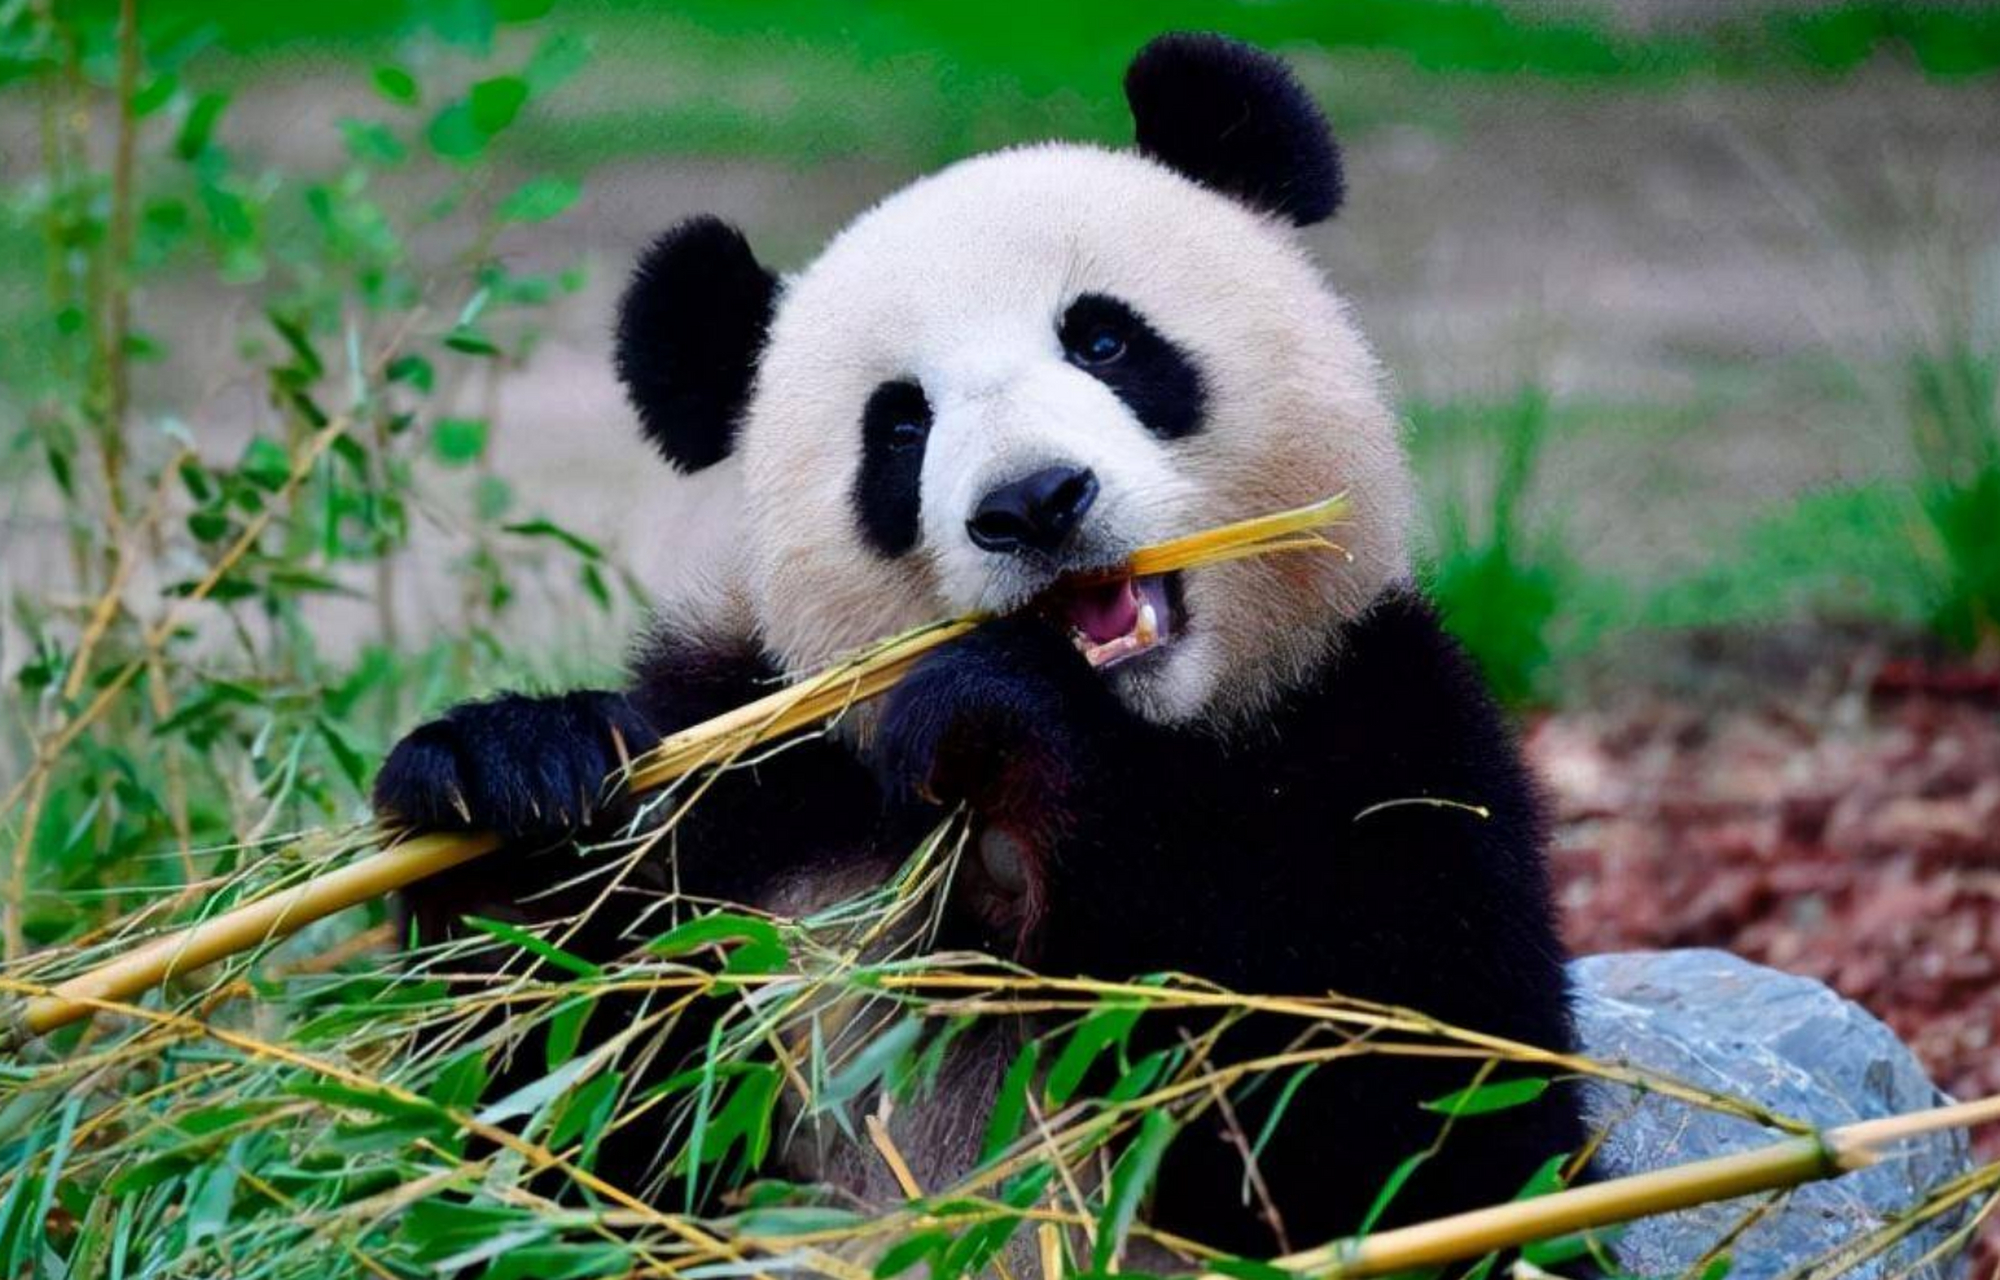 成都作为中国四川省的省会城市,被誉为熊猫的故乡,与熊猫有着深厚的